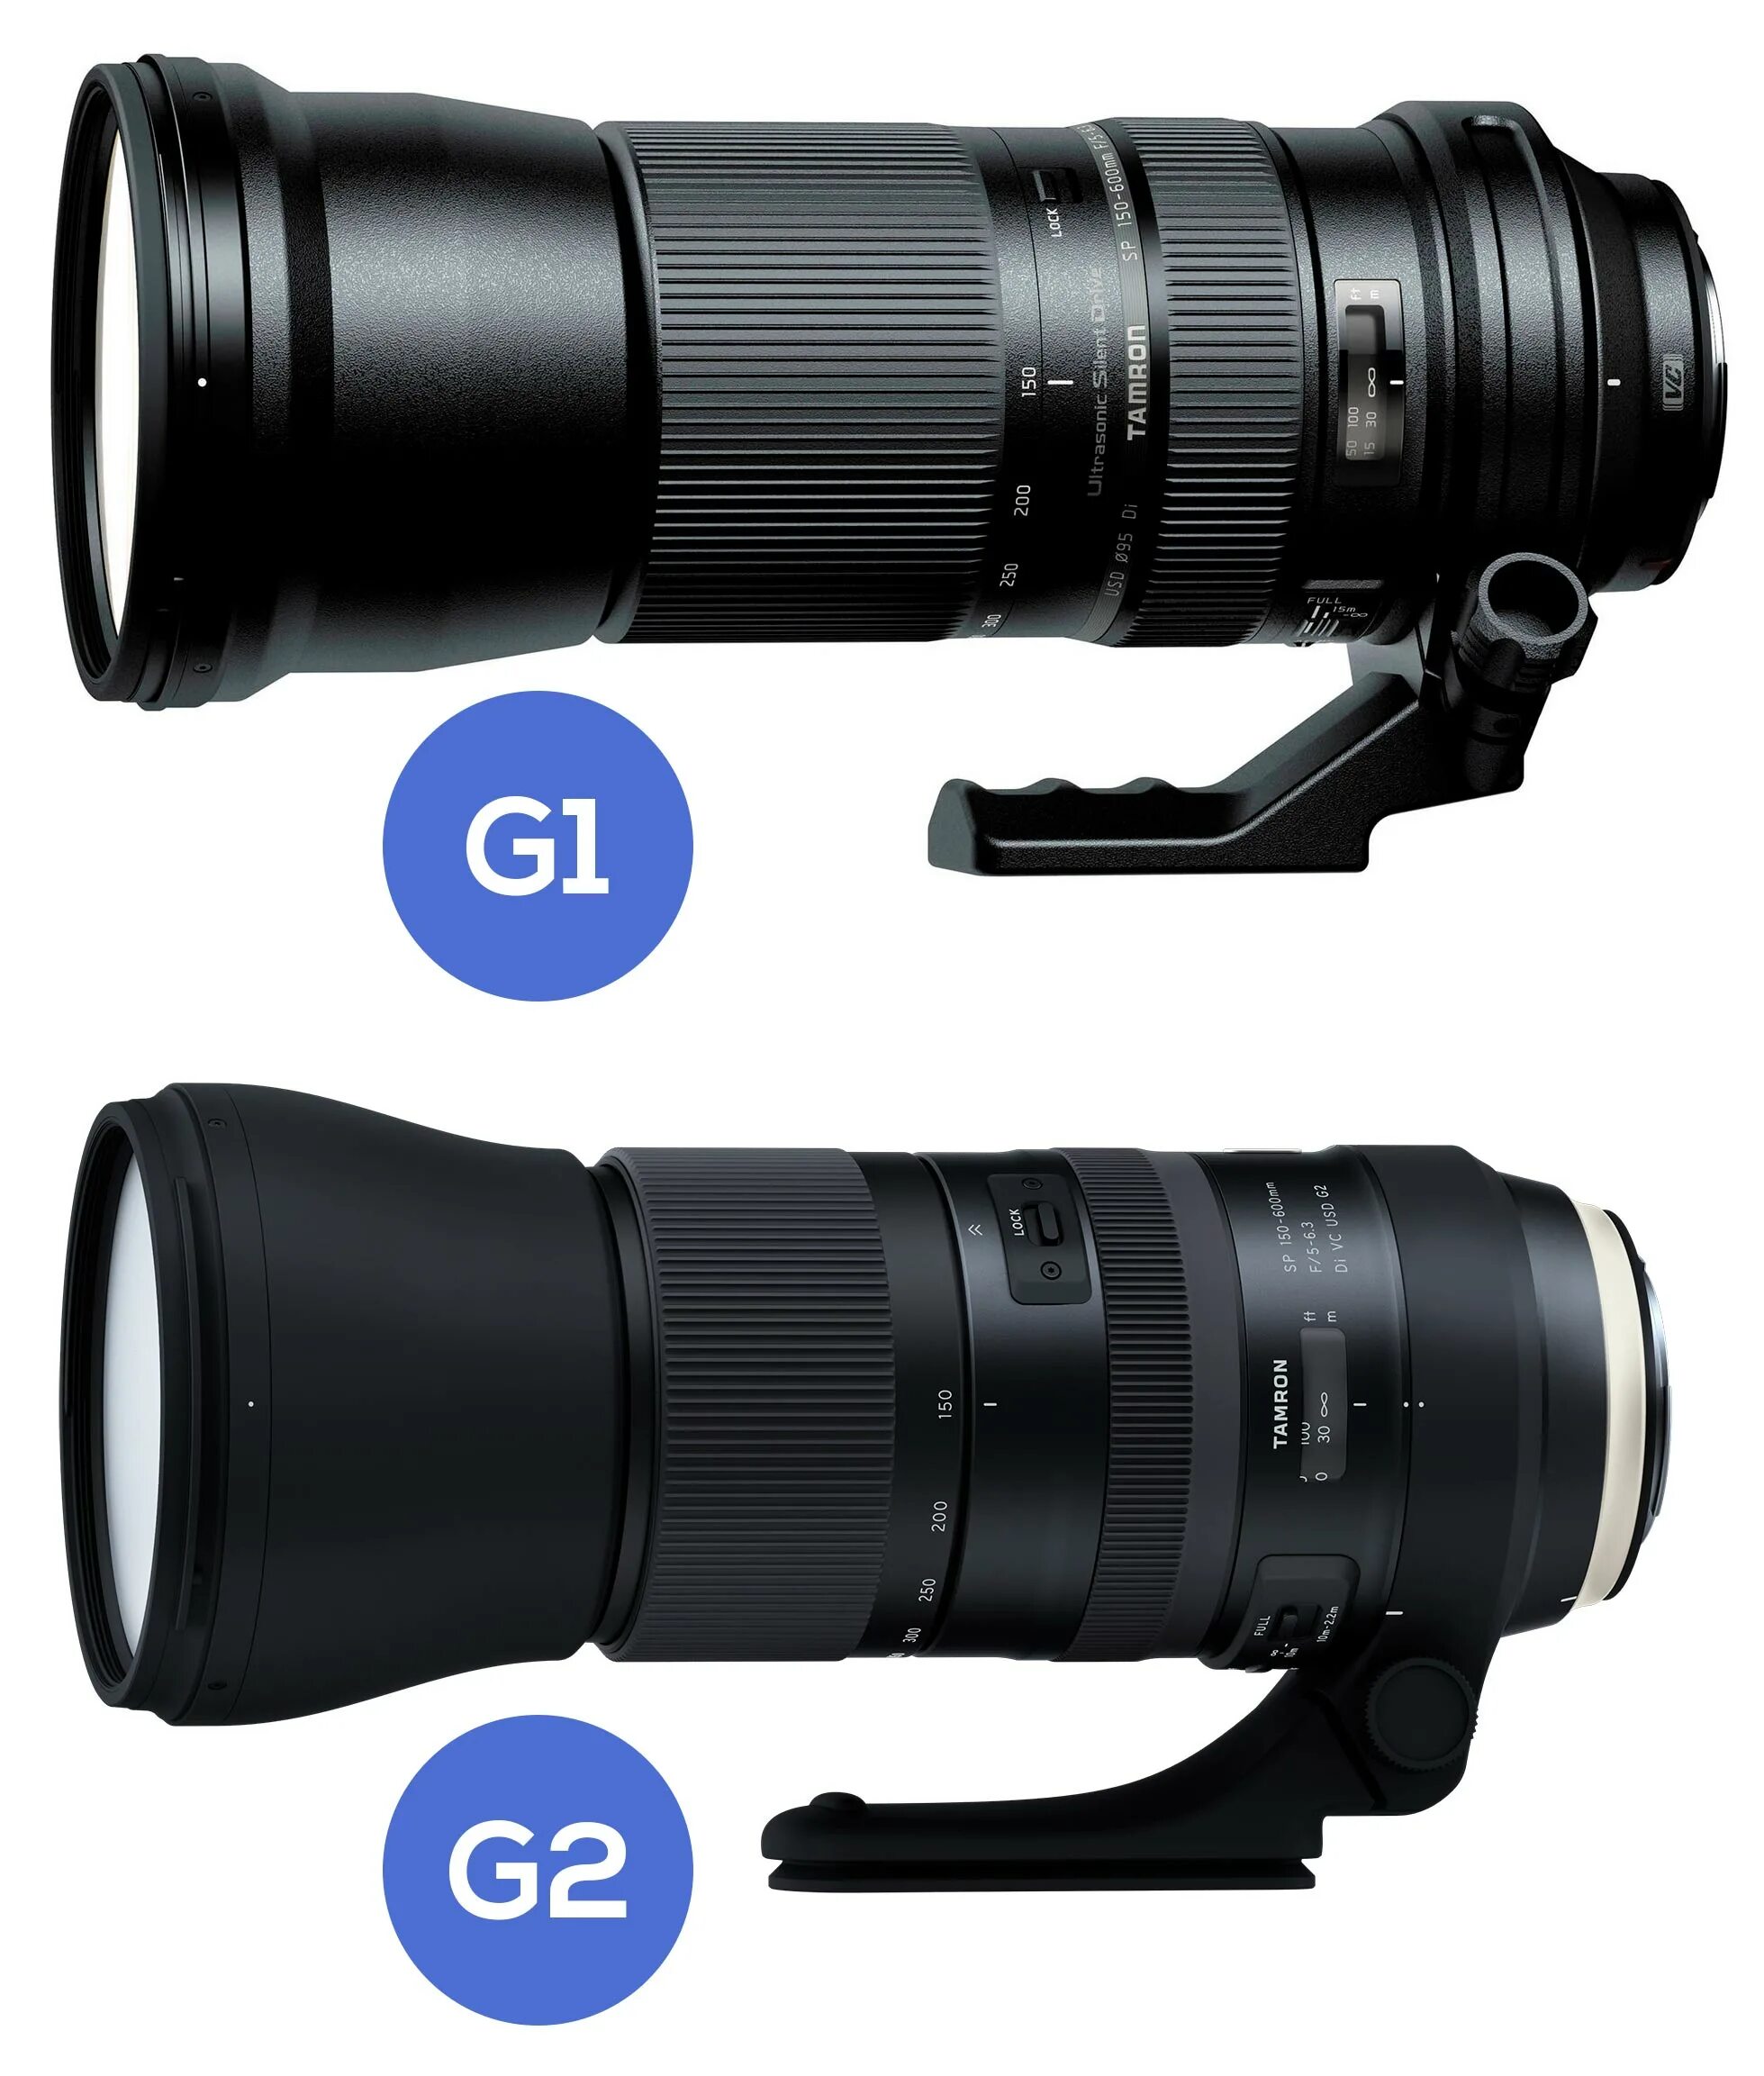 Tamron 150-600 g2 Canon. Tamron 150-600 Nikon. Tamron 150-600mm. Tamron 150-600mm g2.